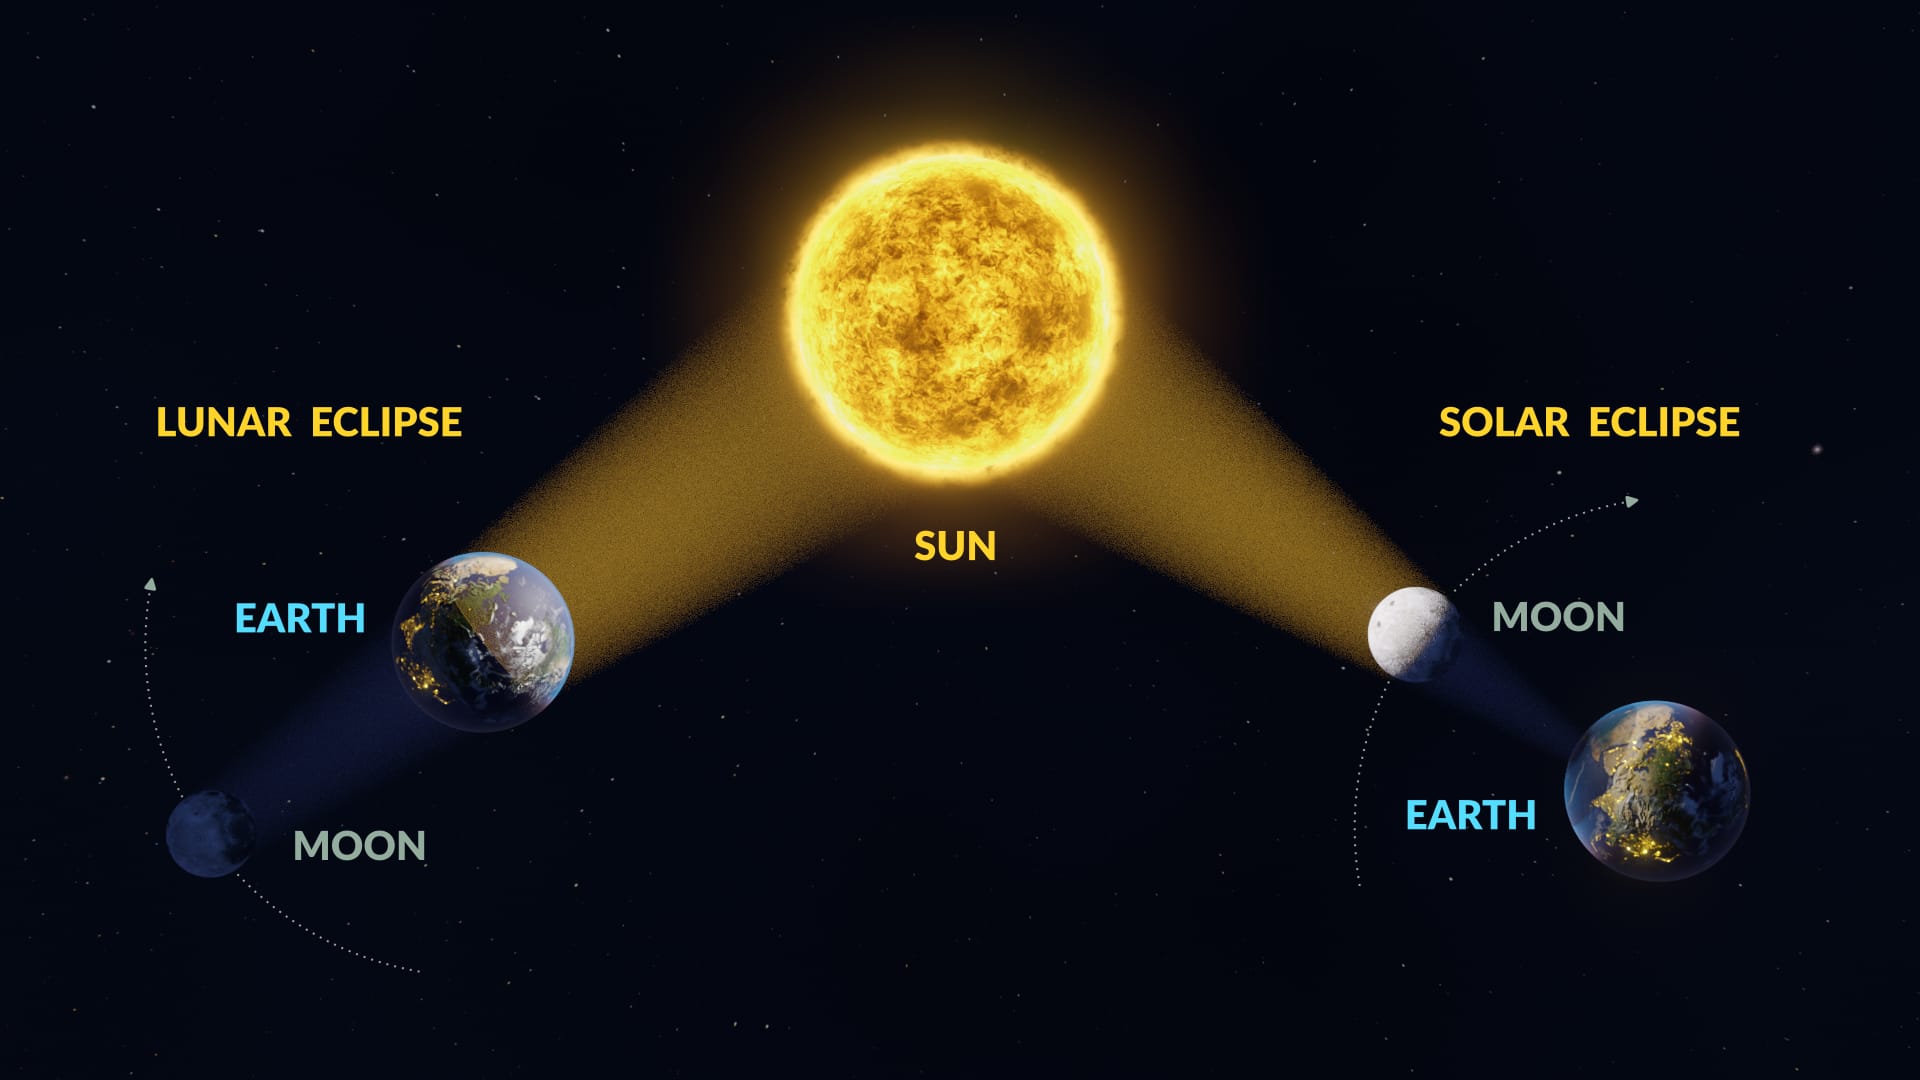 Lunar eclipse vs solar eclipse